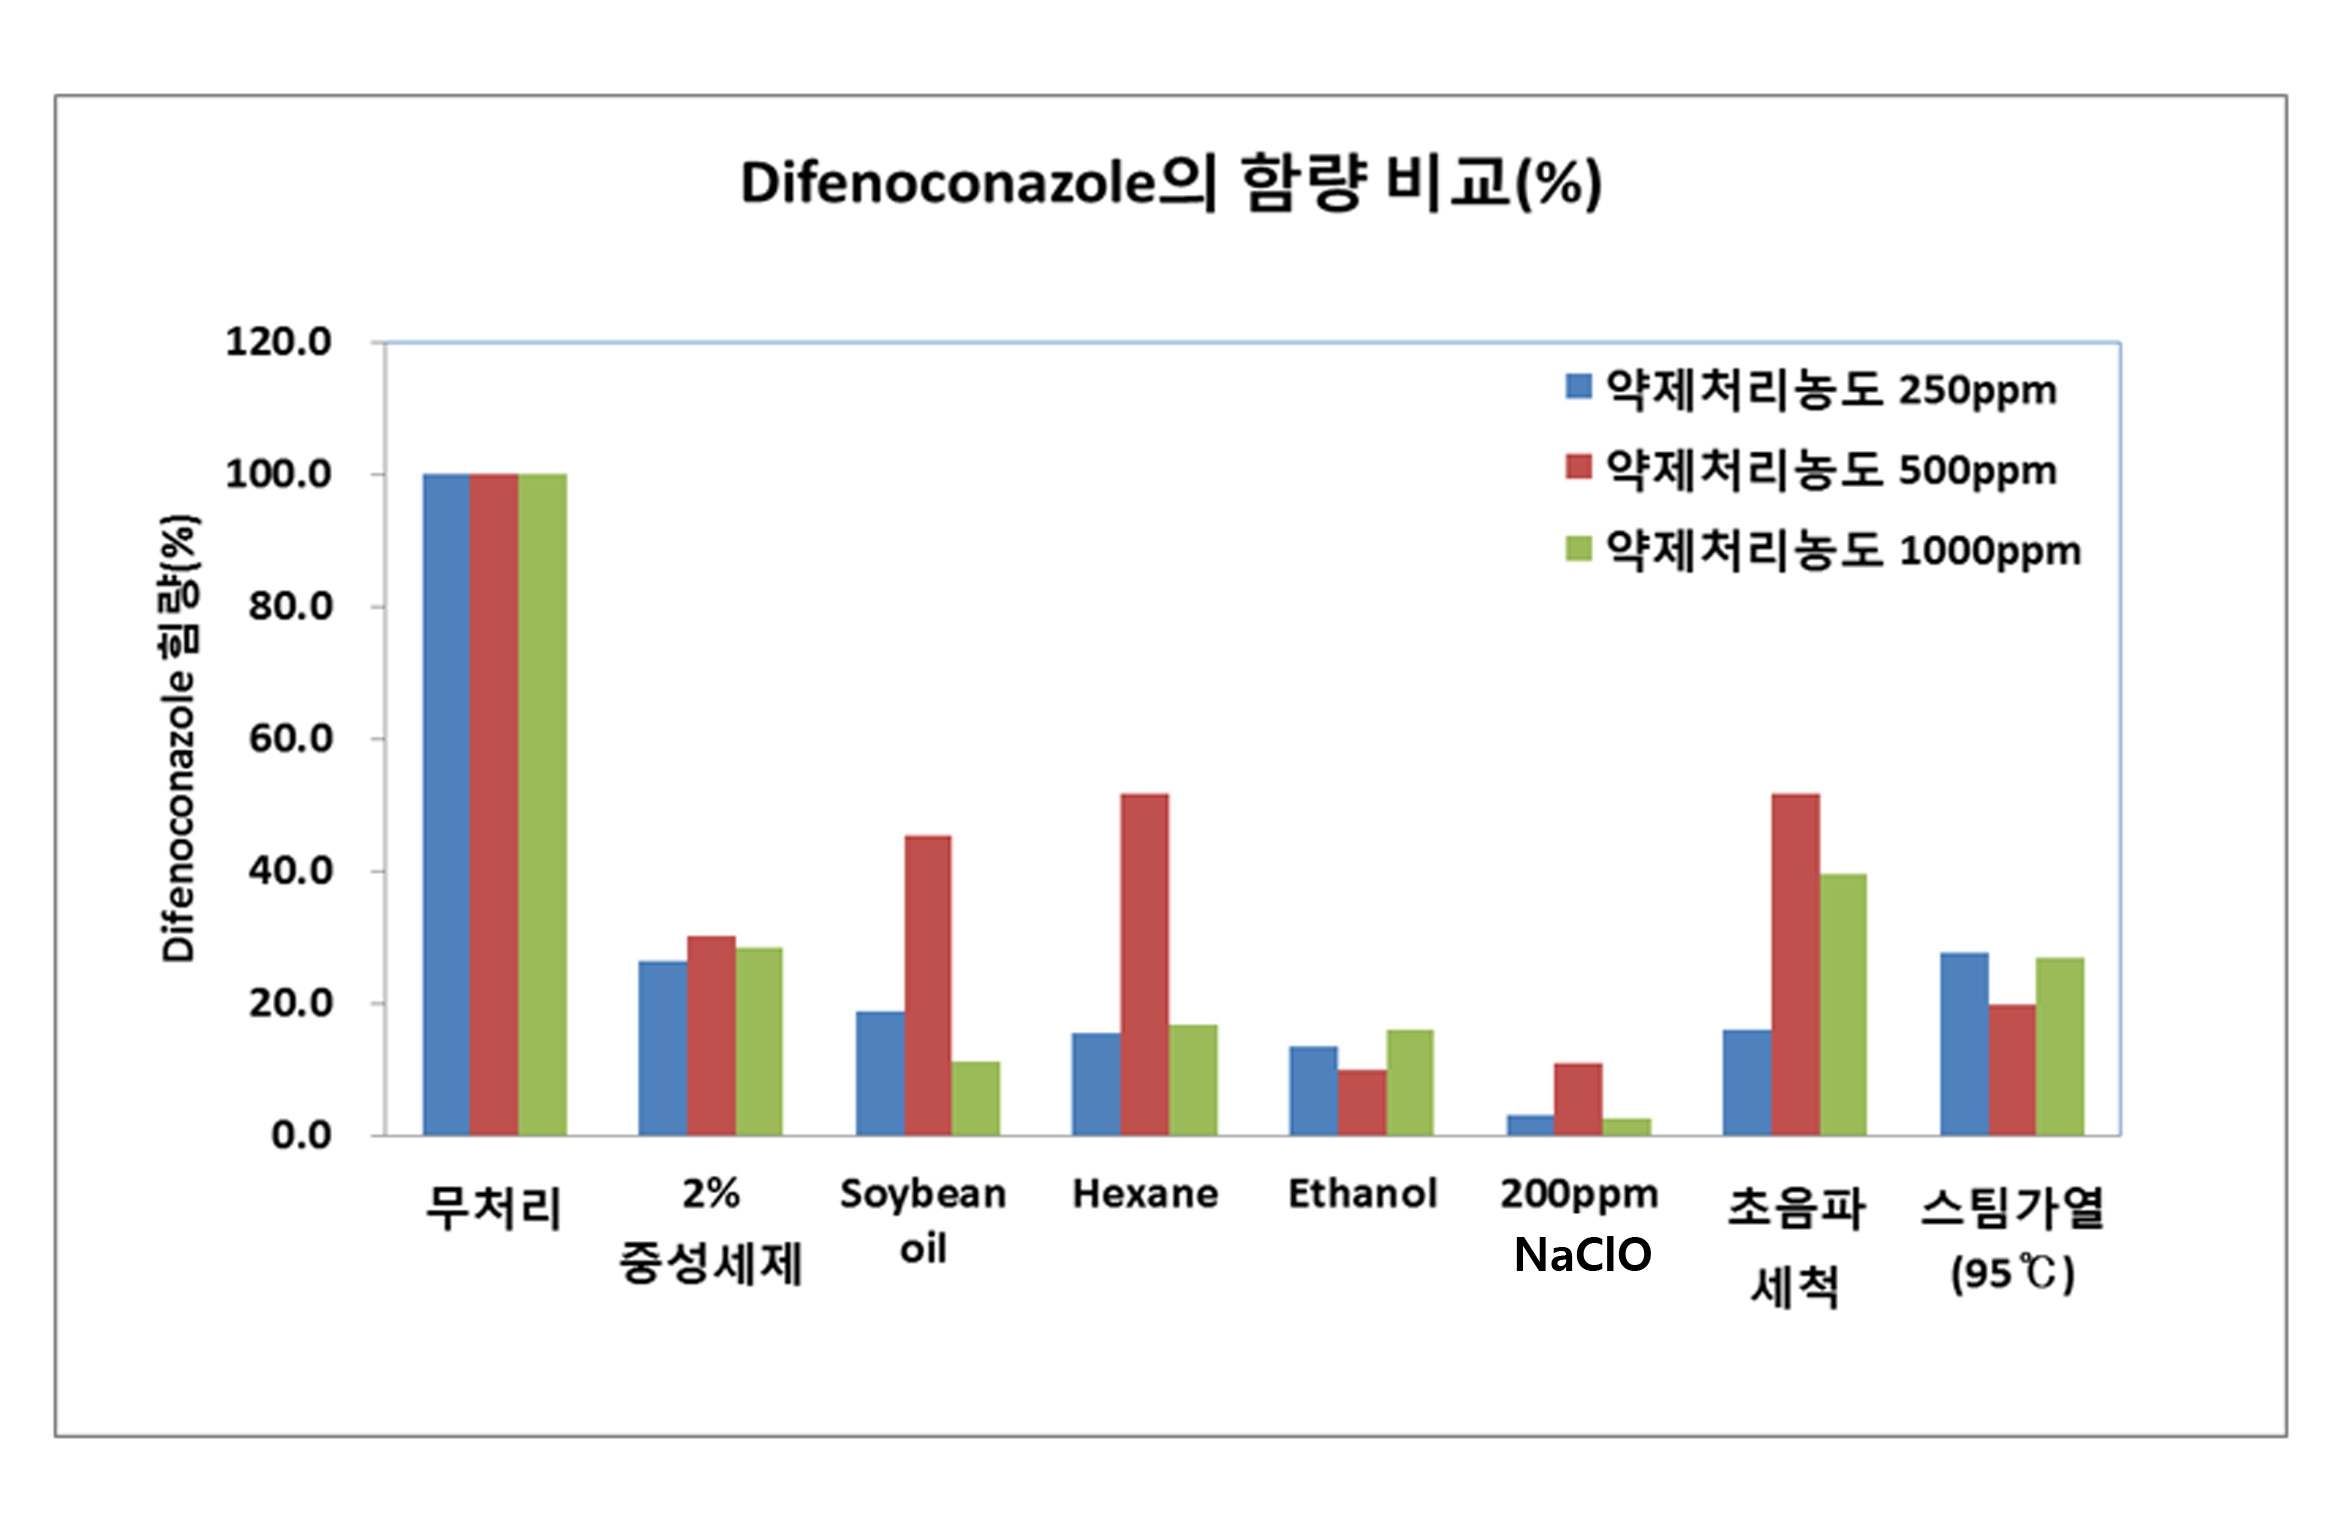 물리 ㆍ 화학적 처리방법에 의한 difenoconazole의 잔류률(%)